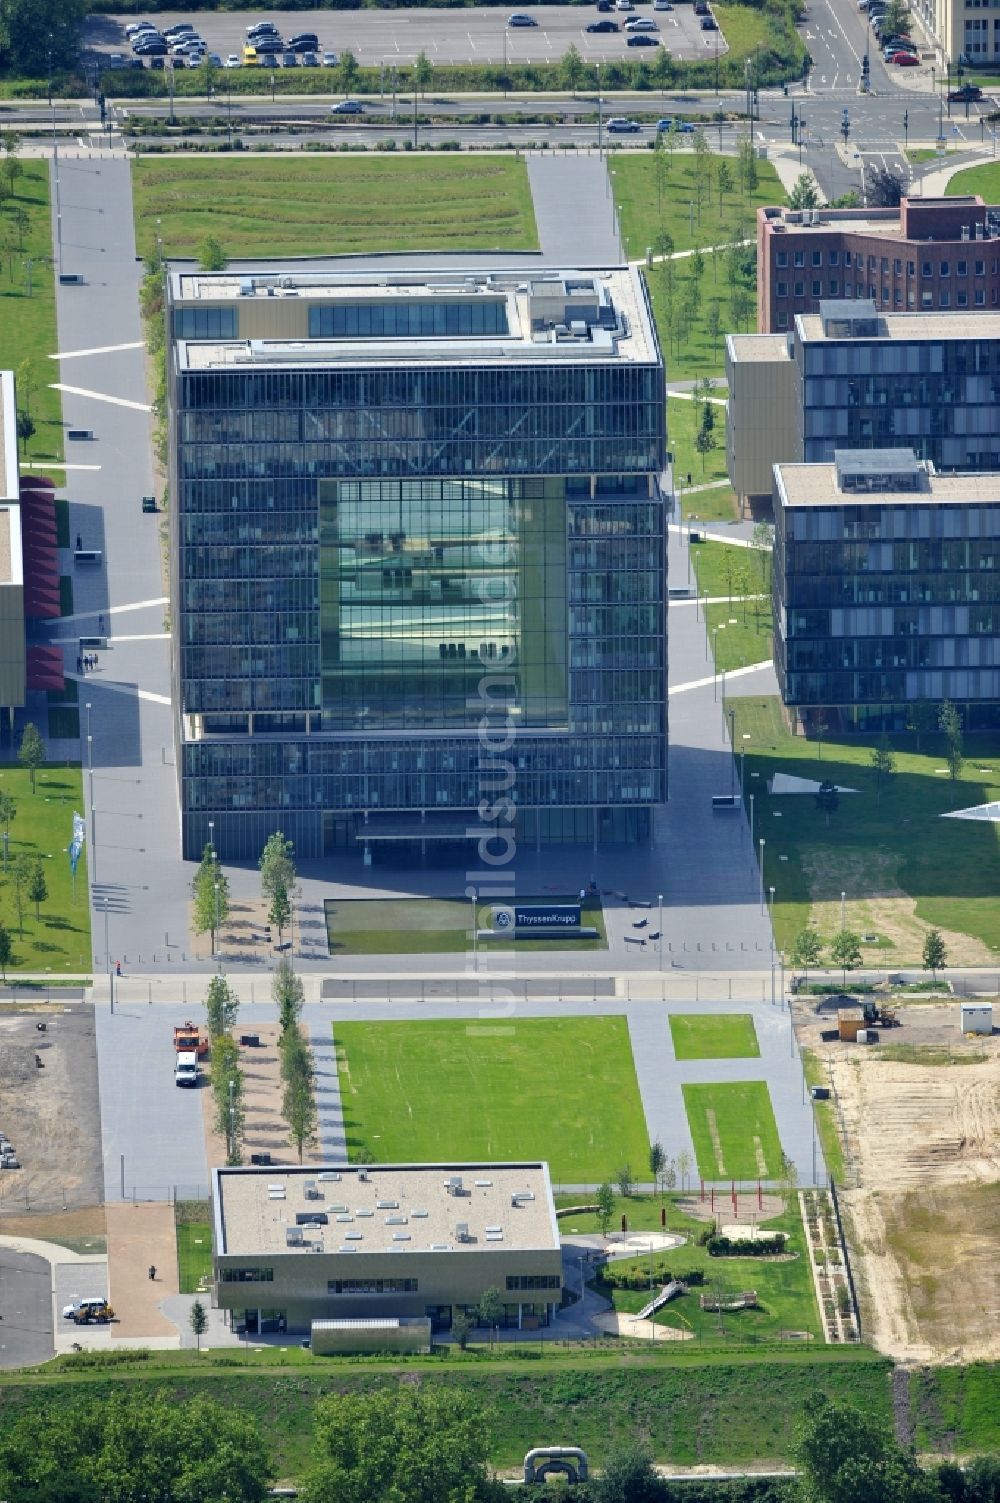 Luftbild Essen - Blick auf das Gebäude der ThyssenKrupp AG in Essen